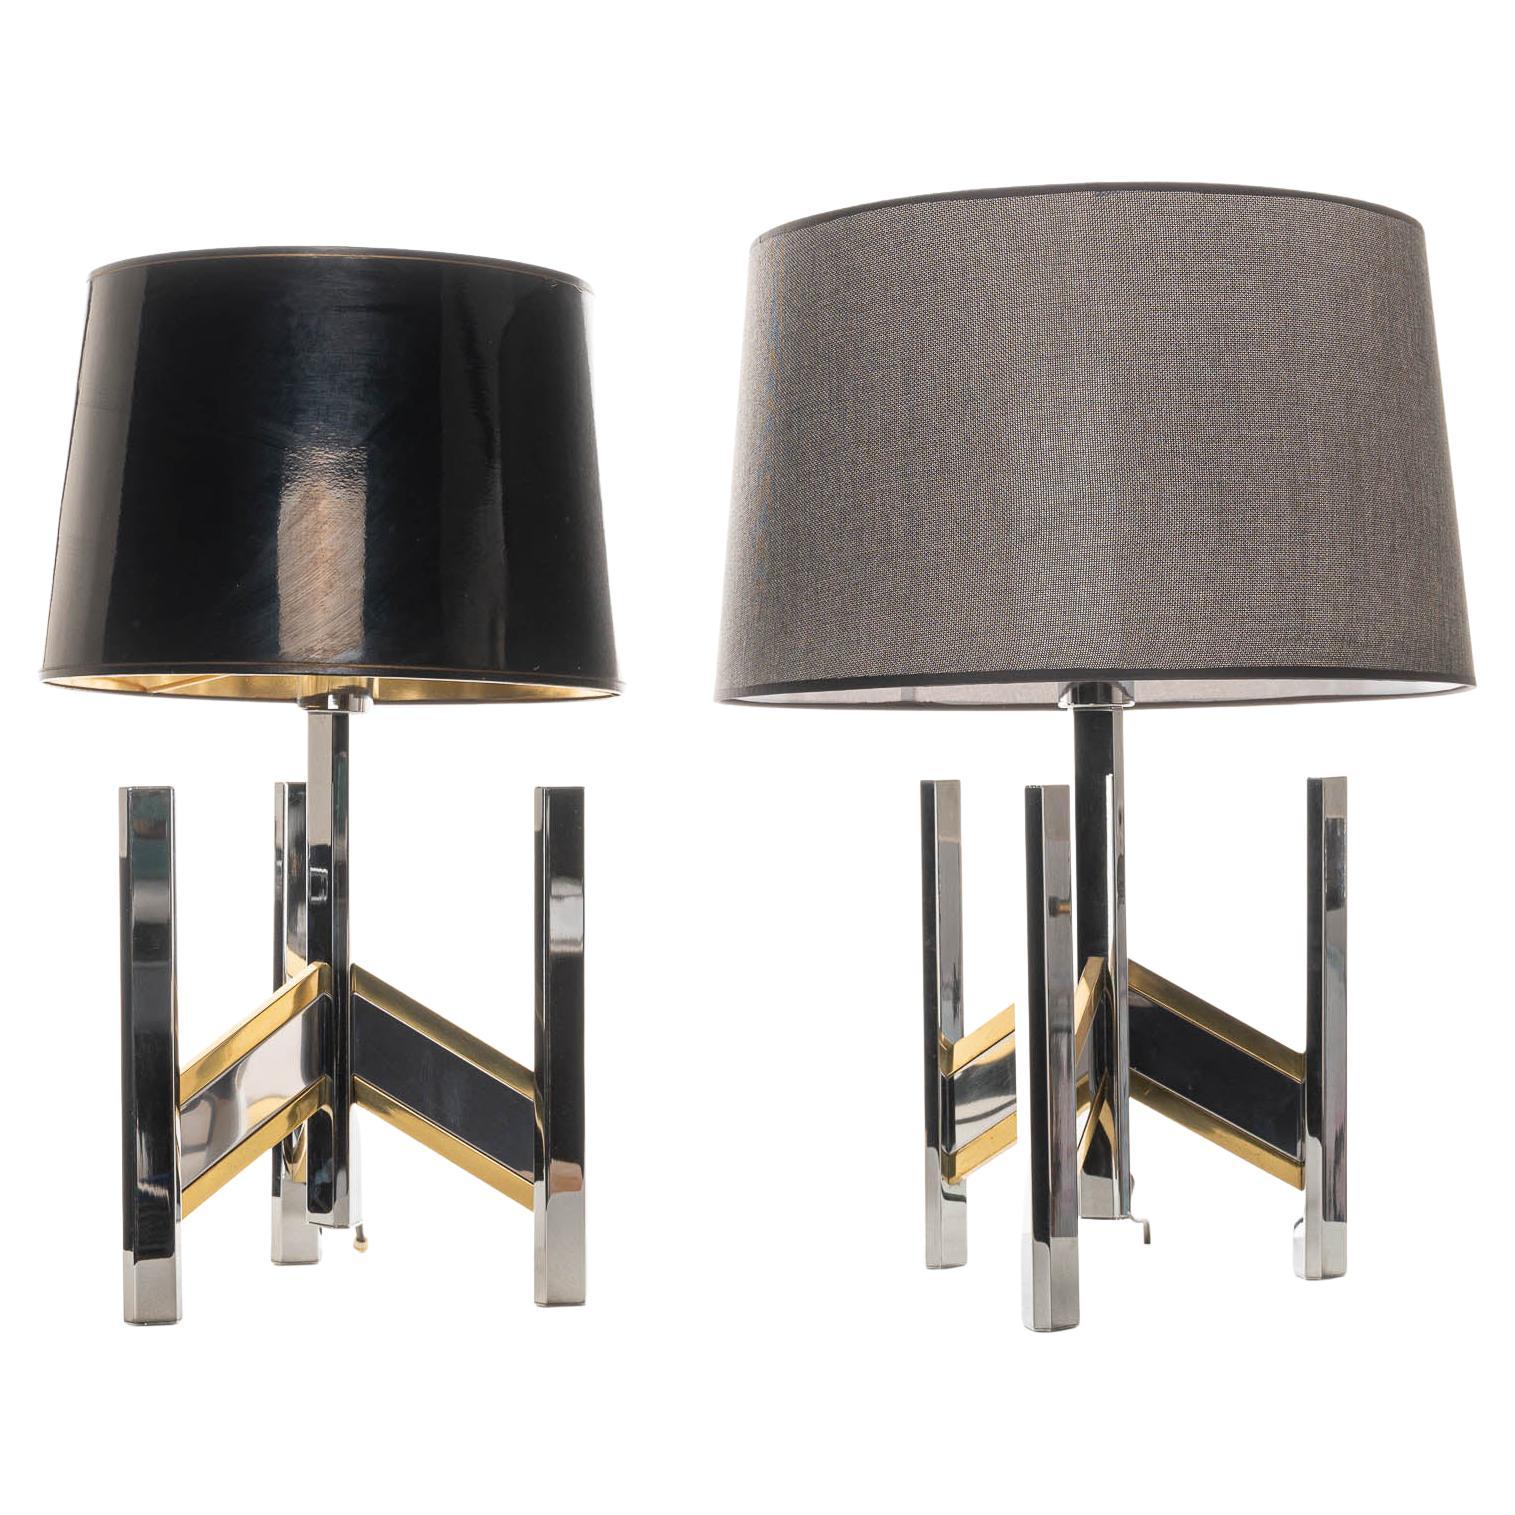 1970’s Brass & Chrome Table Lamps, Classic Concorde Design by Gaetano Sciolari